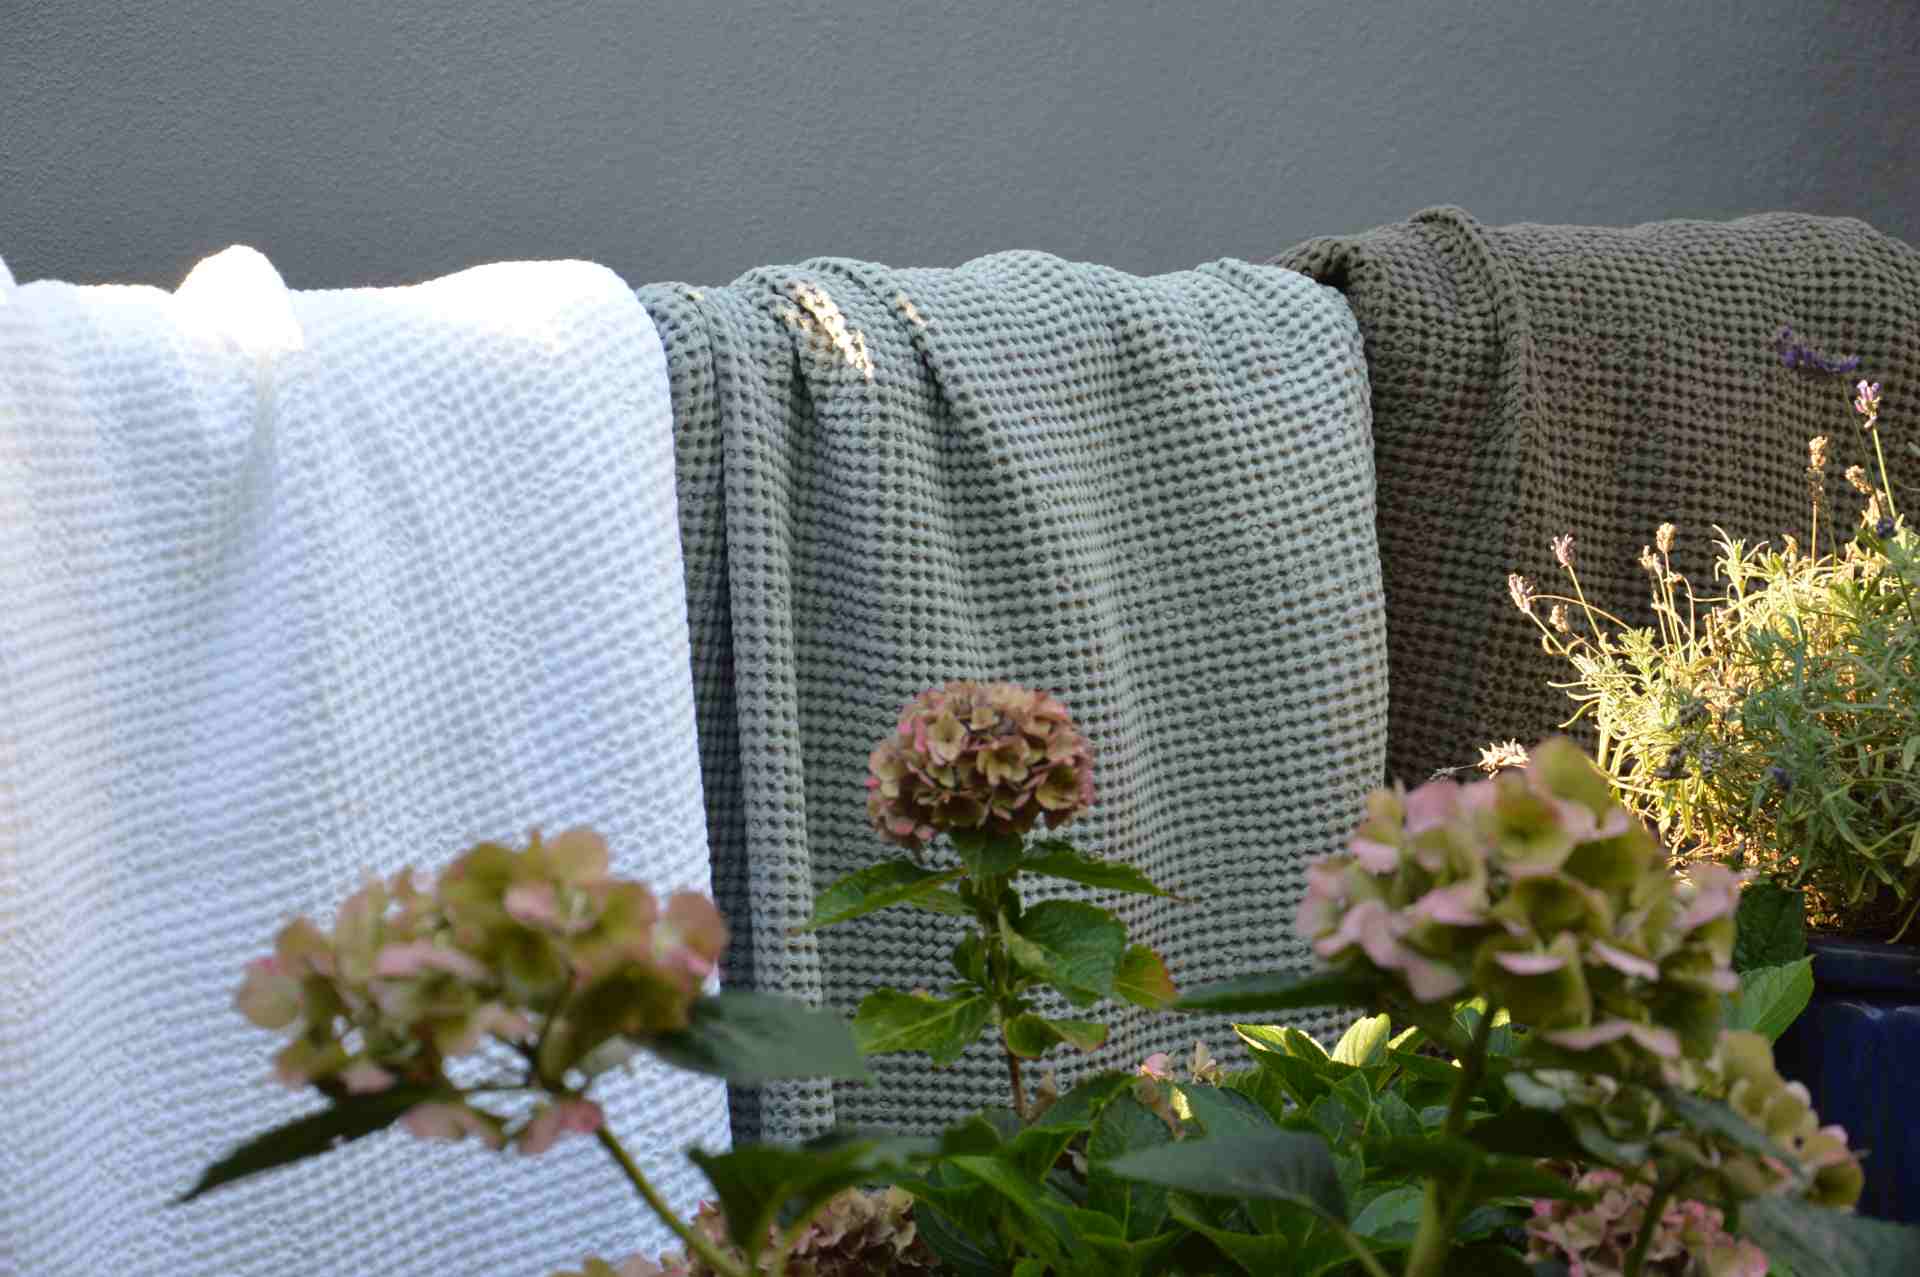 Die bequeme Decke Alba wurde aus hundert Prozent Bauwolle gefertigt. Designet wurde sie von der Marke Jan Kurtz. Sie ist perfekt geeignet für schöne Sommerabende im Garten. Die Farbe der Decke ist Braun.